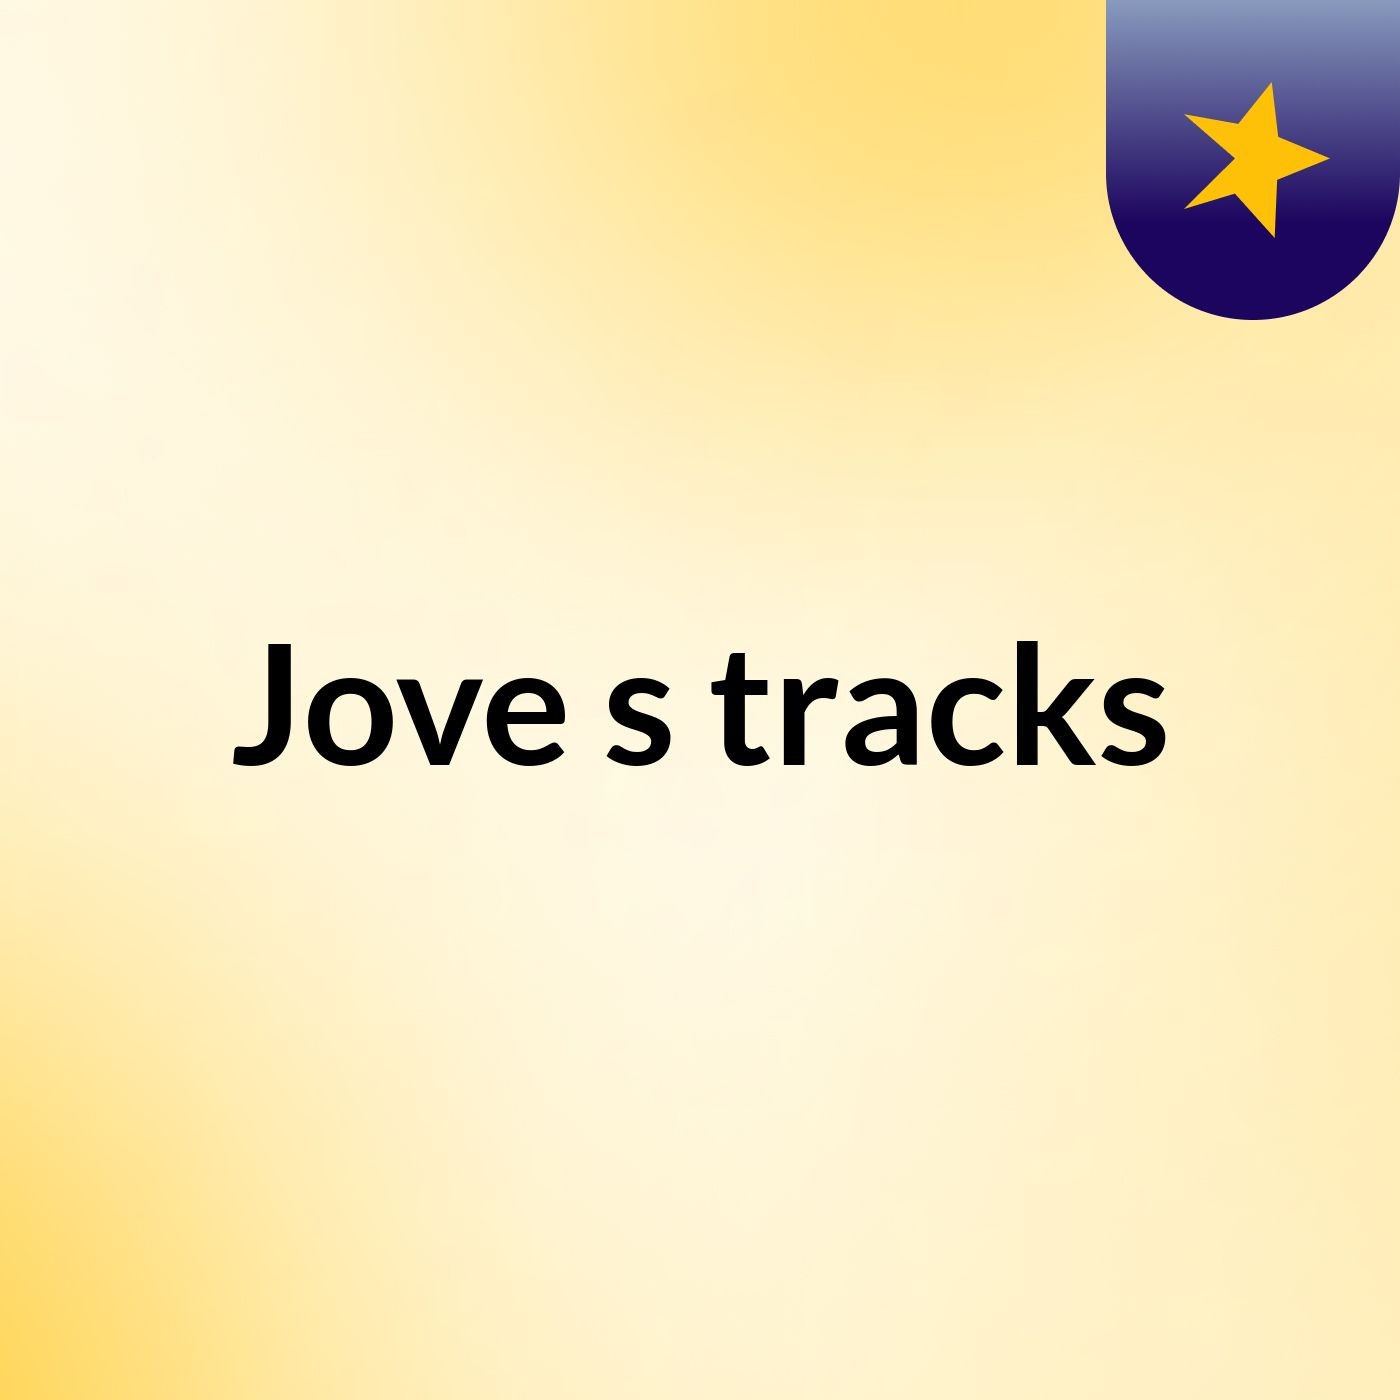 Jove's tracks